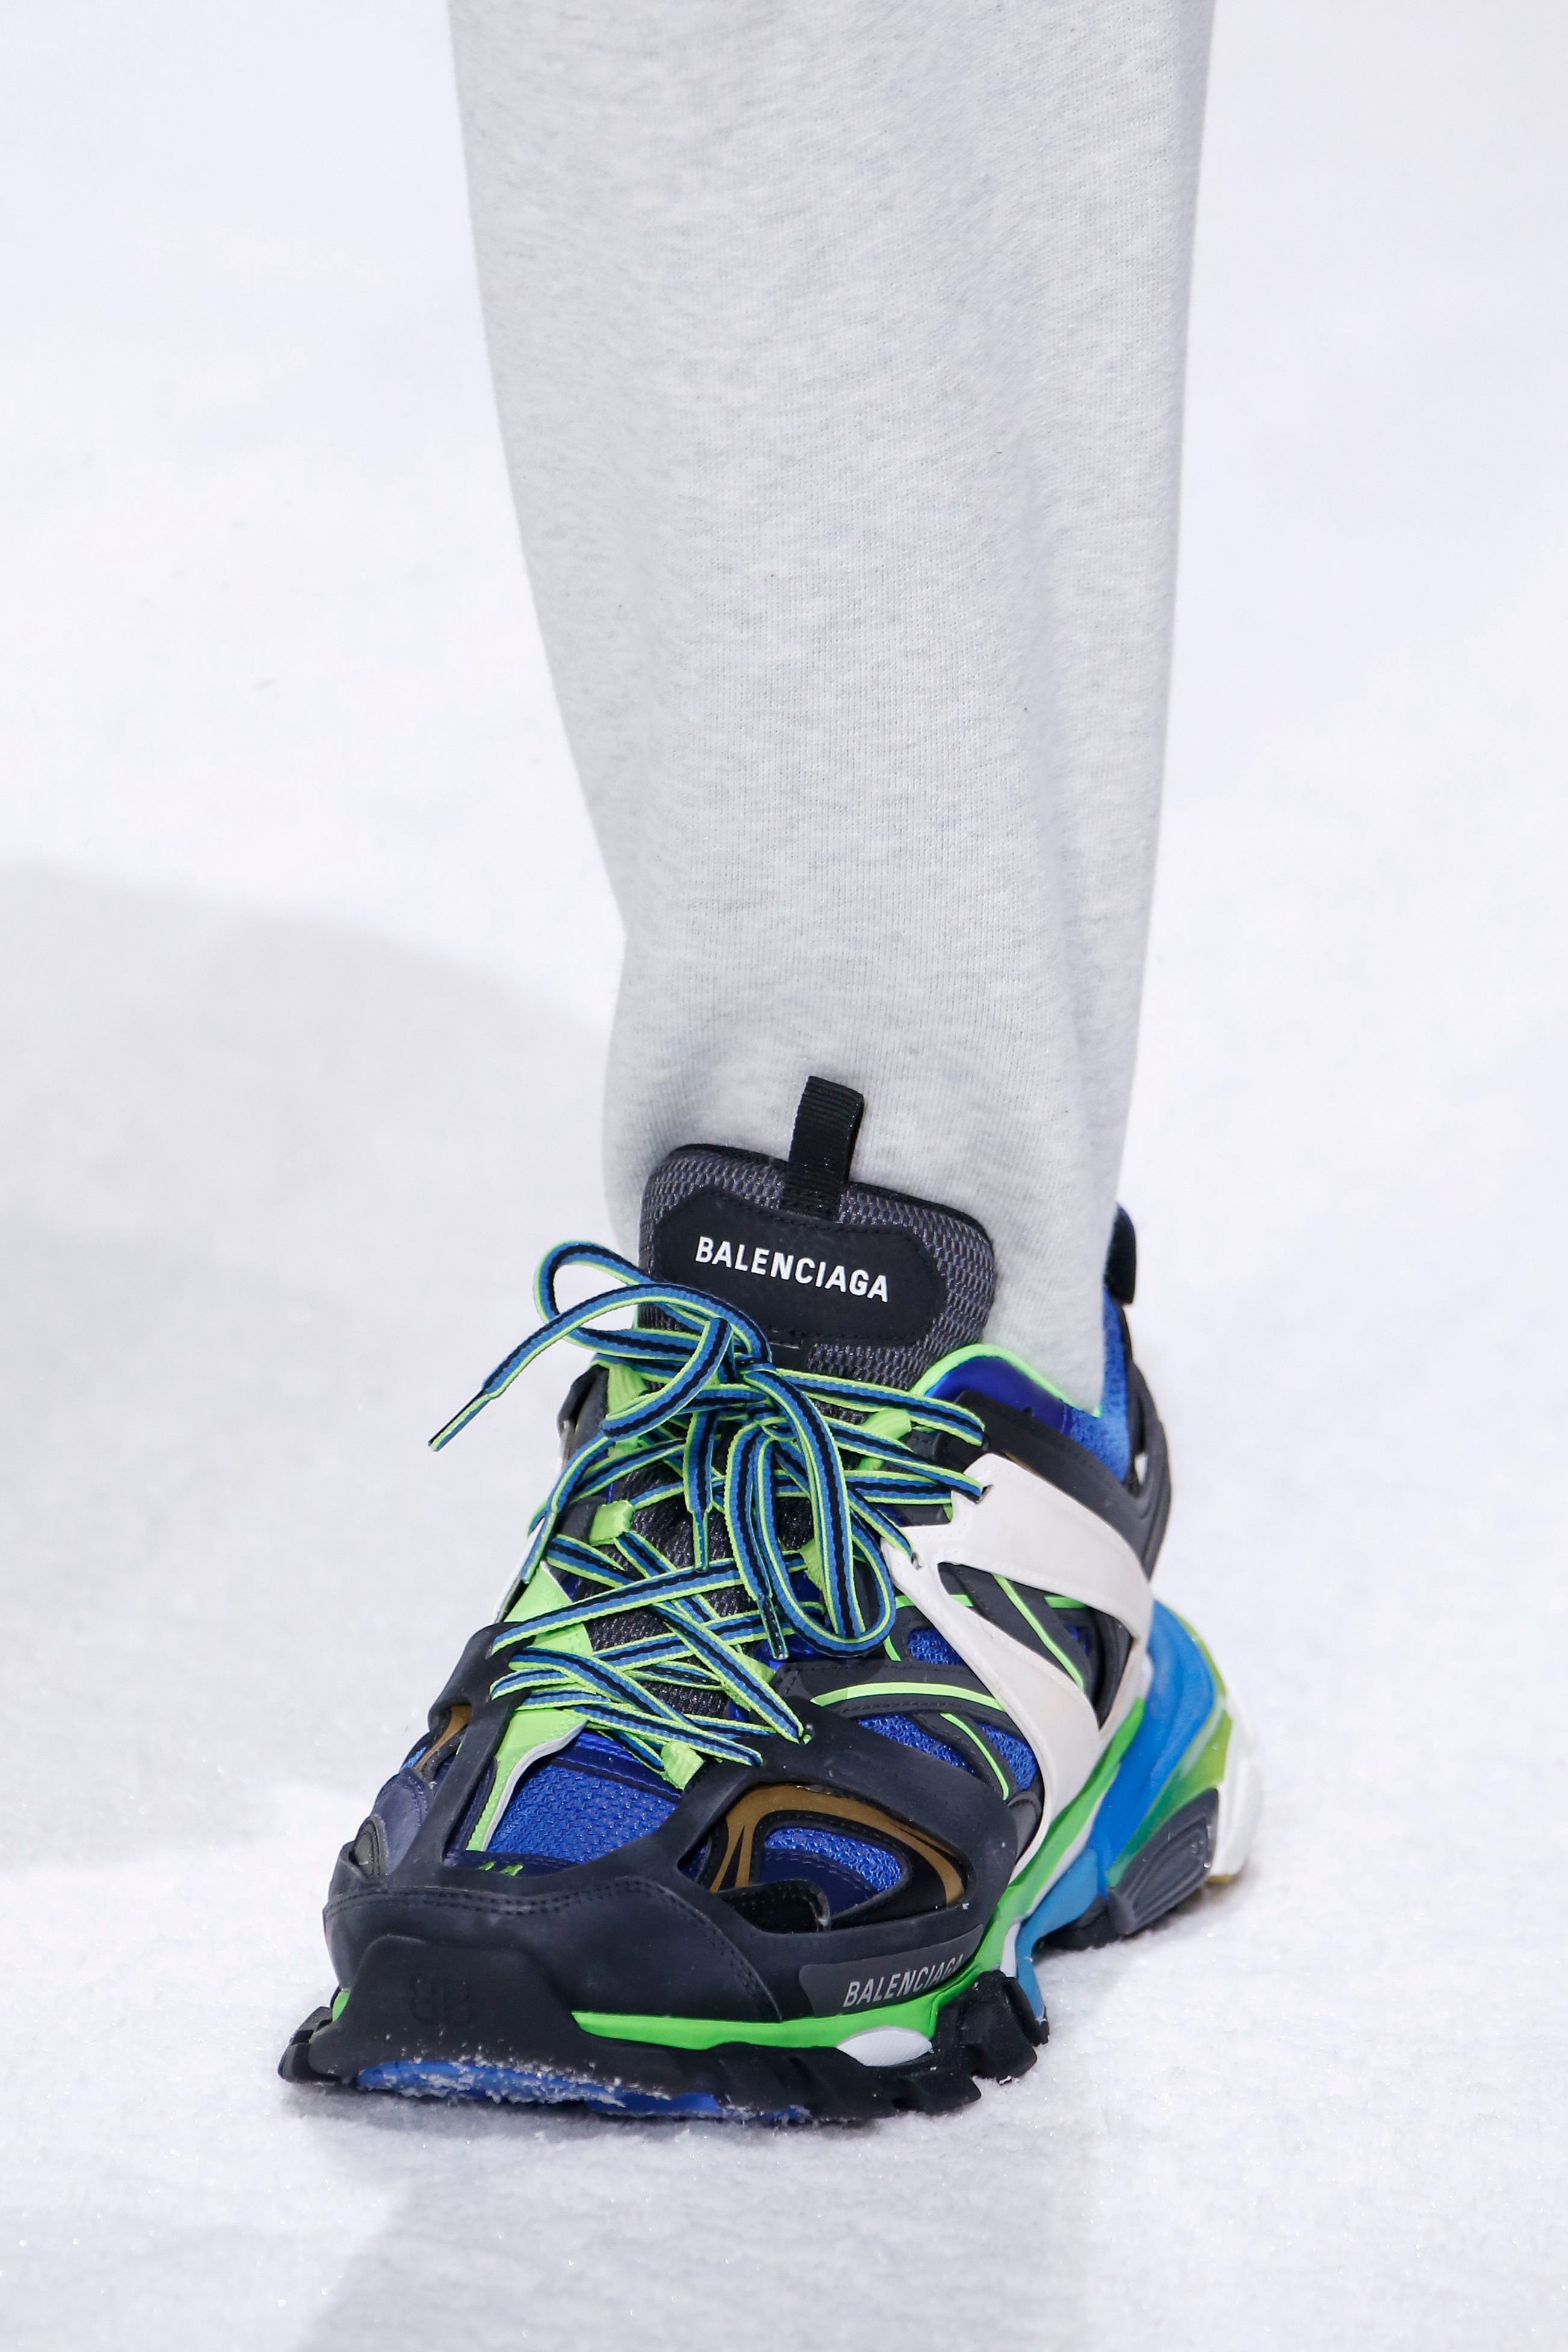 Balenciaga TRACK Sneaker: A Closer Look